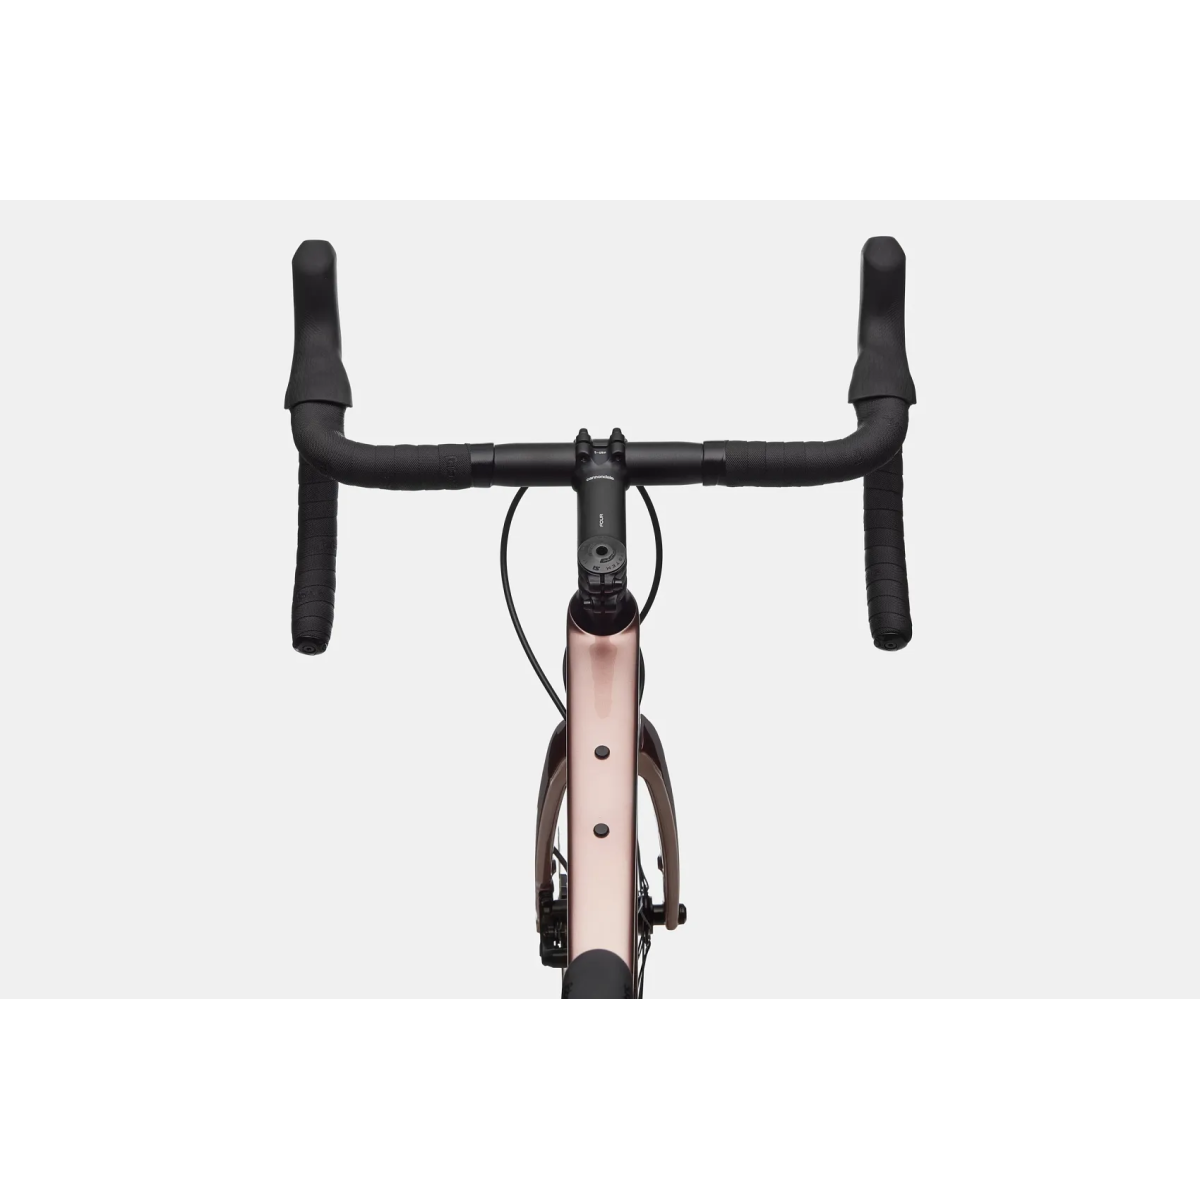 Cannondale Synapse Carbon 4 plento dviratis / Rose Gold